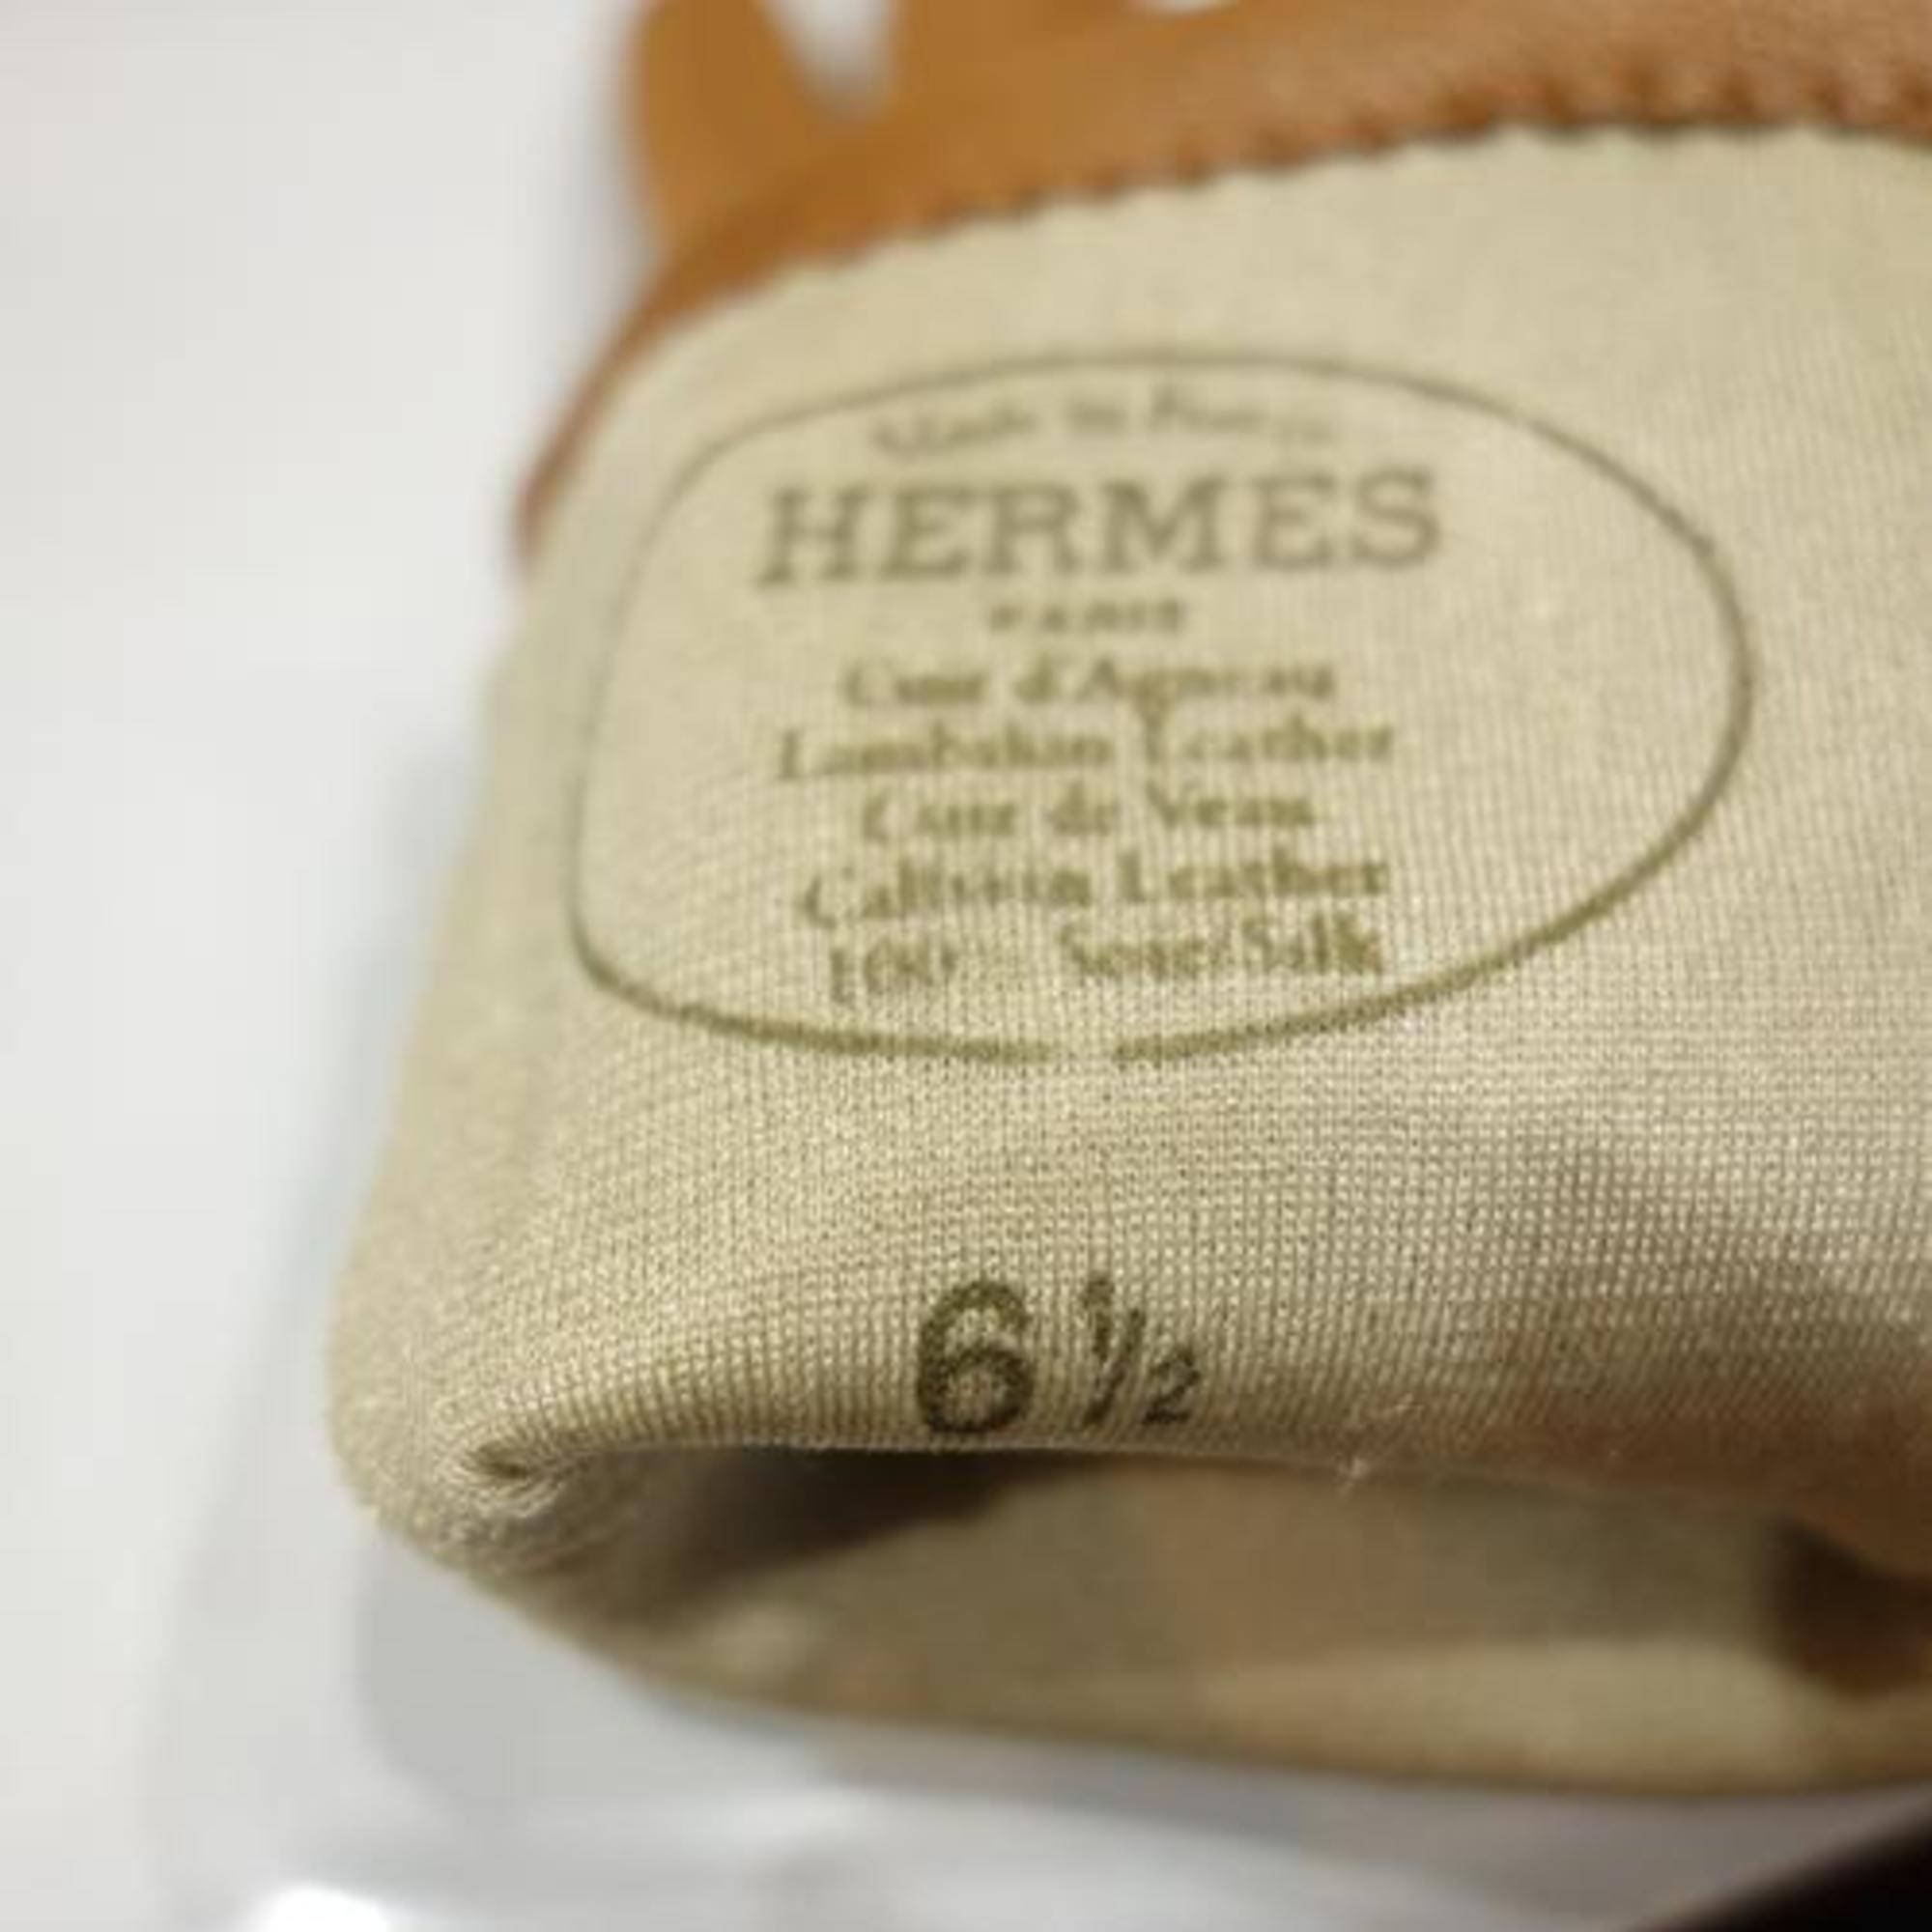 HERMES Leather gloves Camel